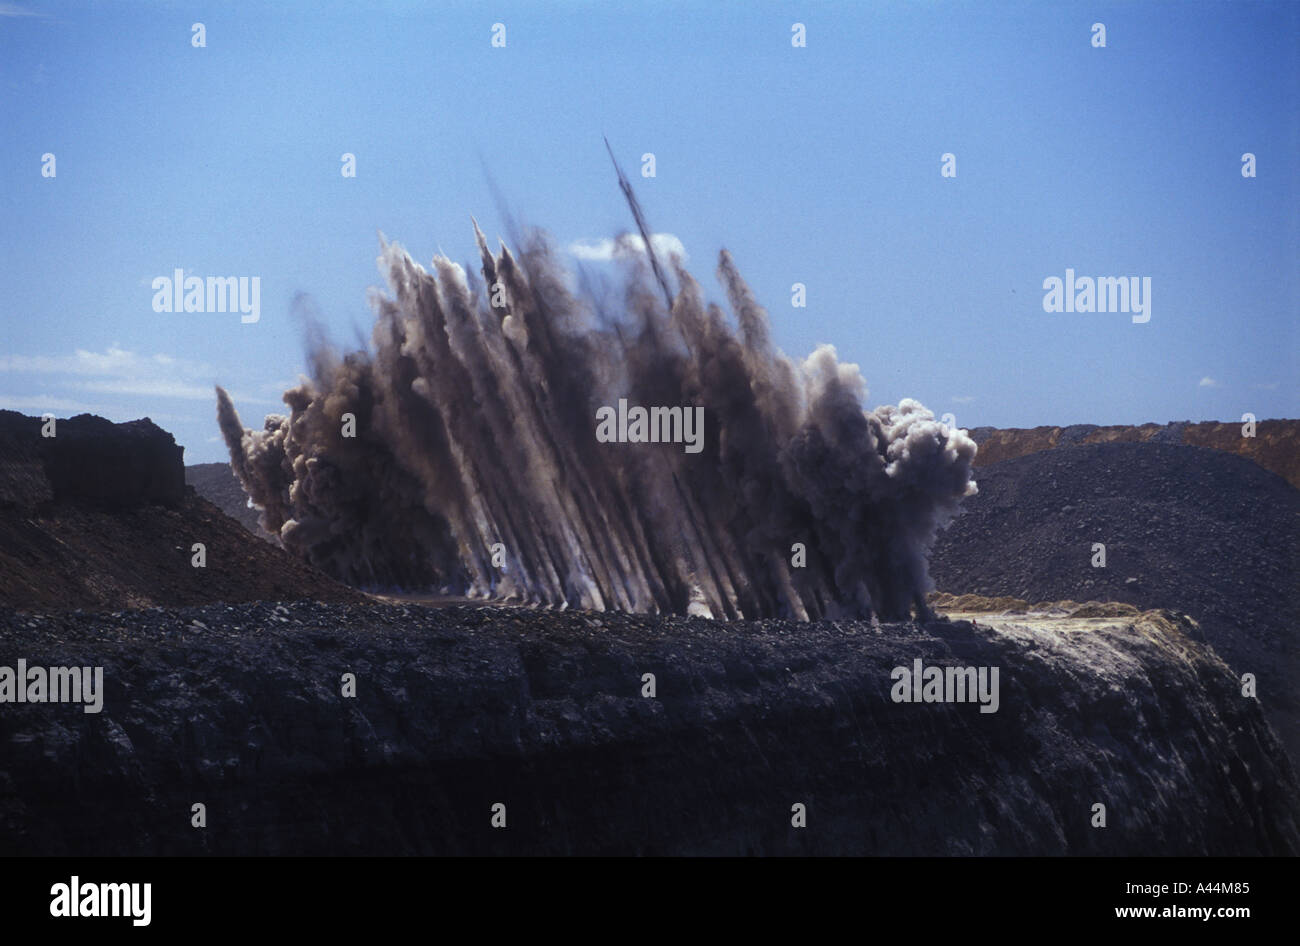 overburden blast coal mine Central Queensland sip 3588 Stock Photo